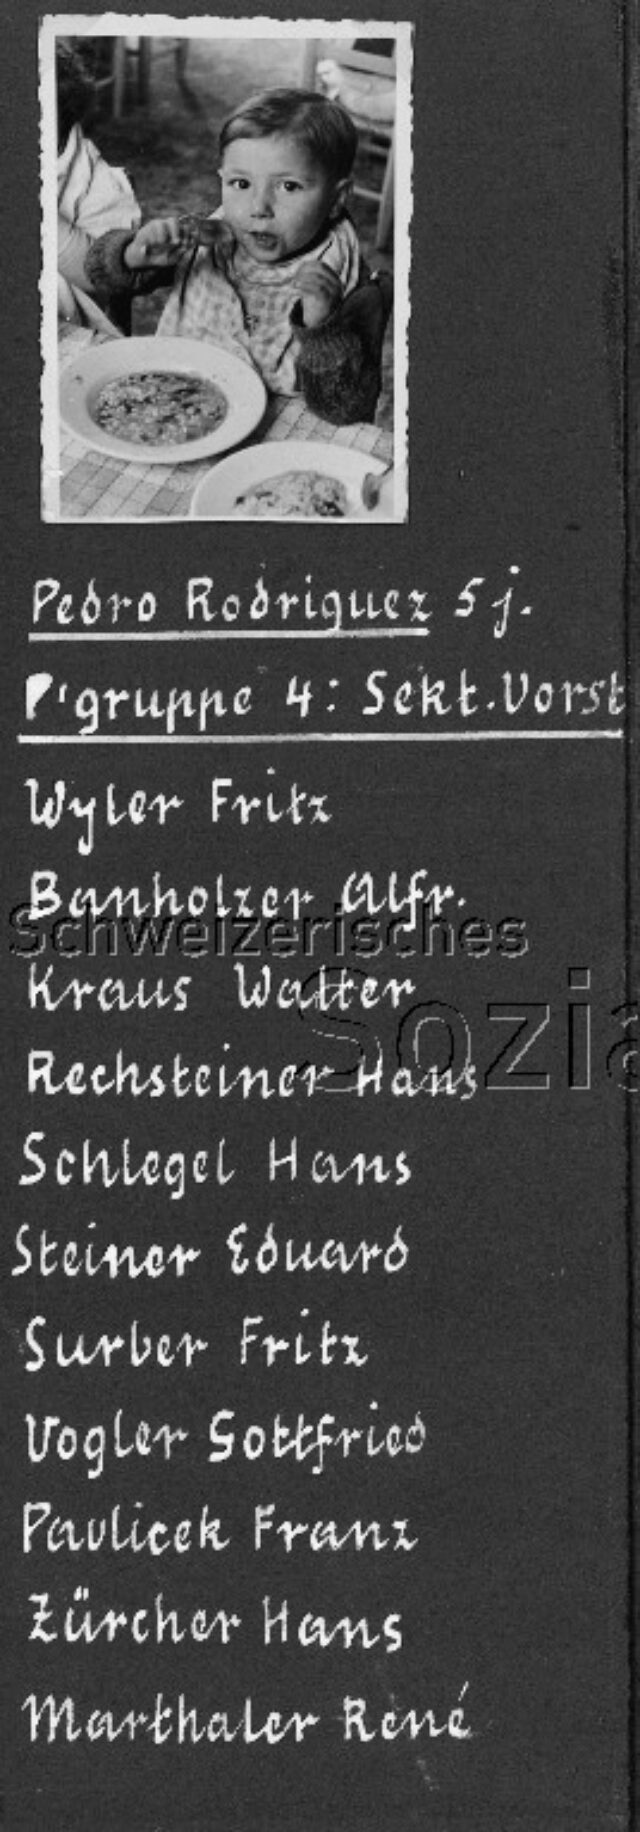 Pedro Rodriguez - Ausschnitt aus dem Album "Patenschaften für Spanienkinder von der Holzarbeiter-Sektion Zürich 1938"